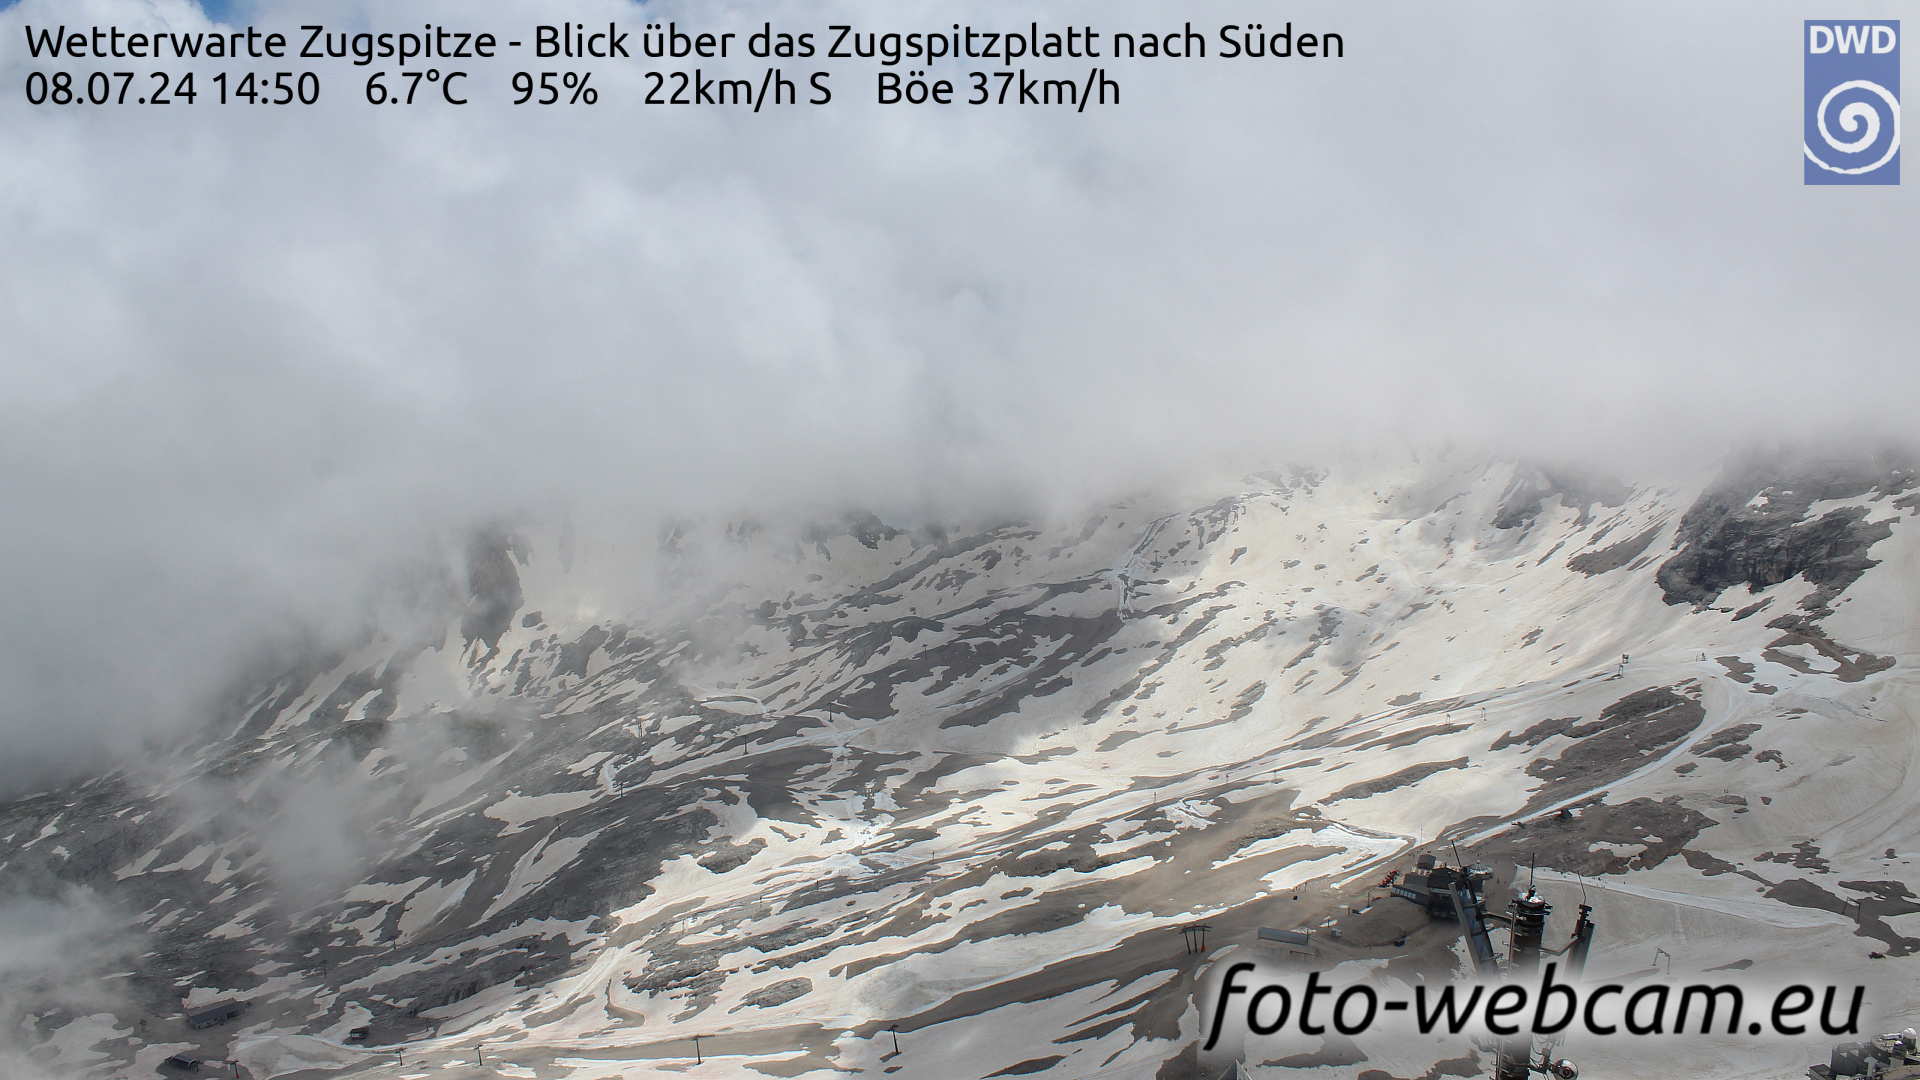 Zugspitze Wed. 14:54